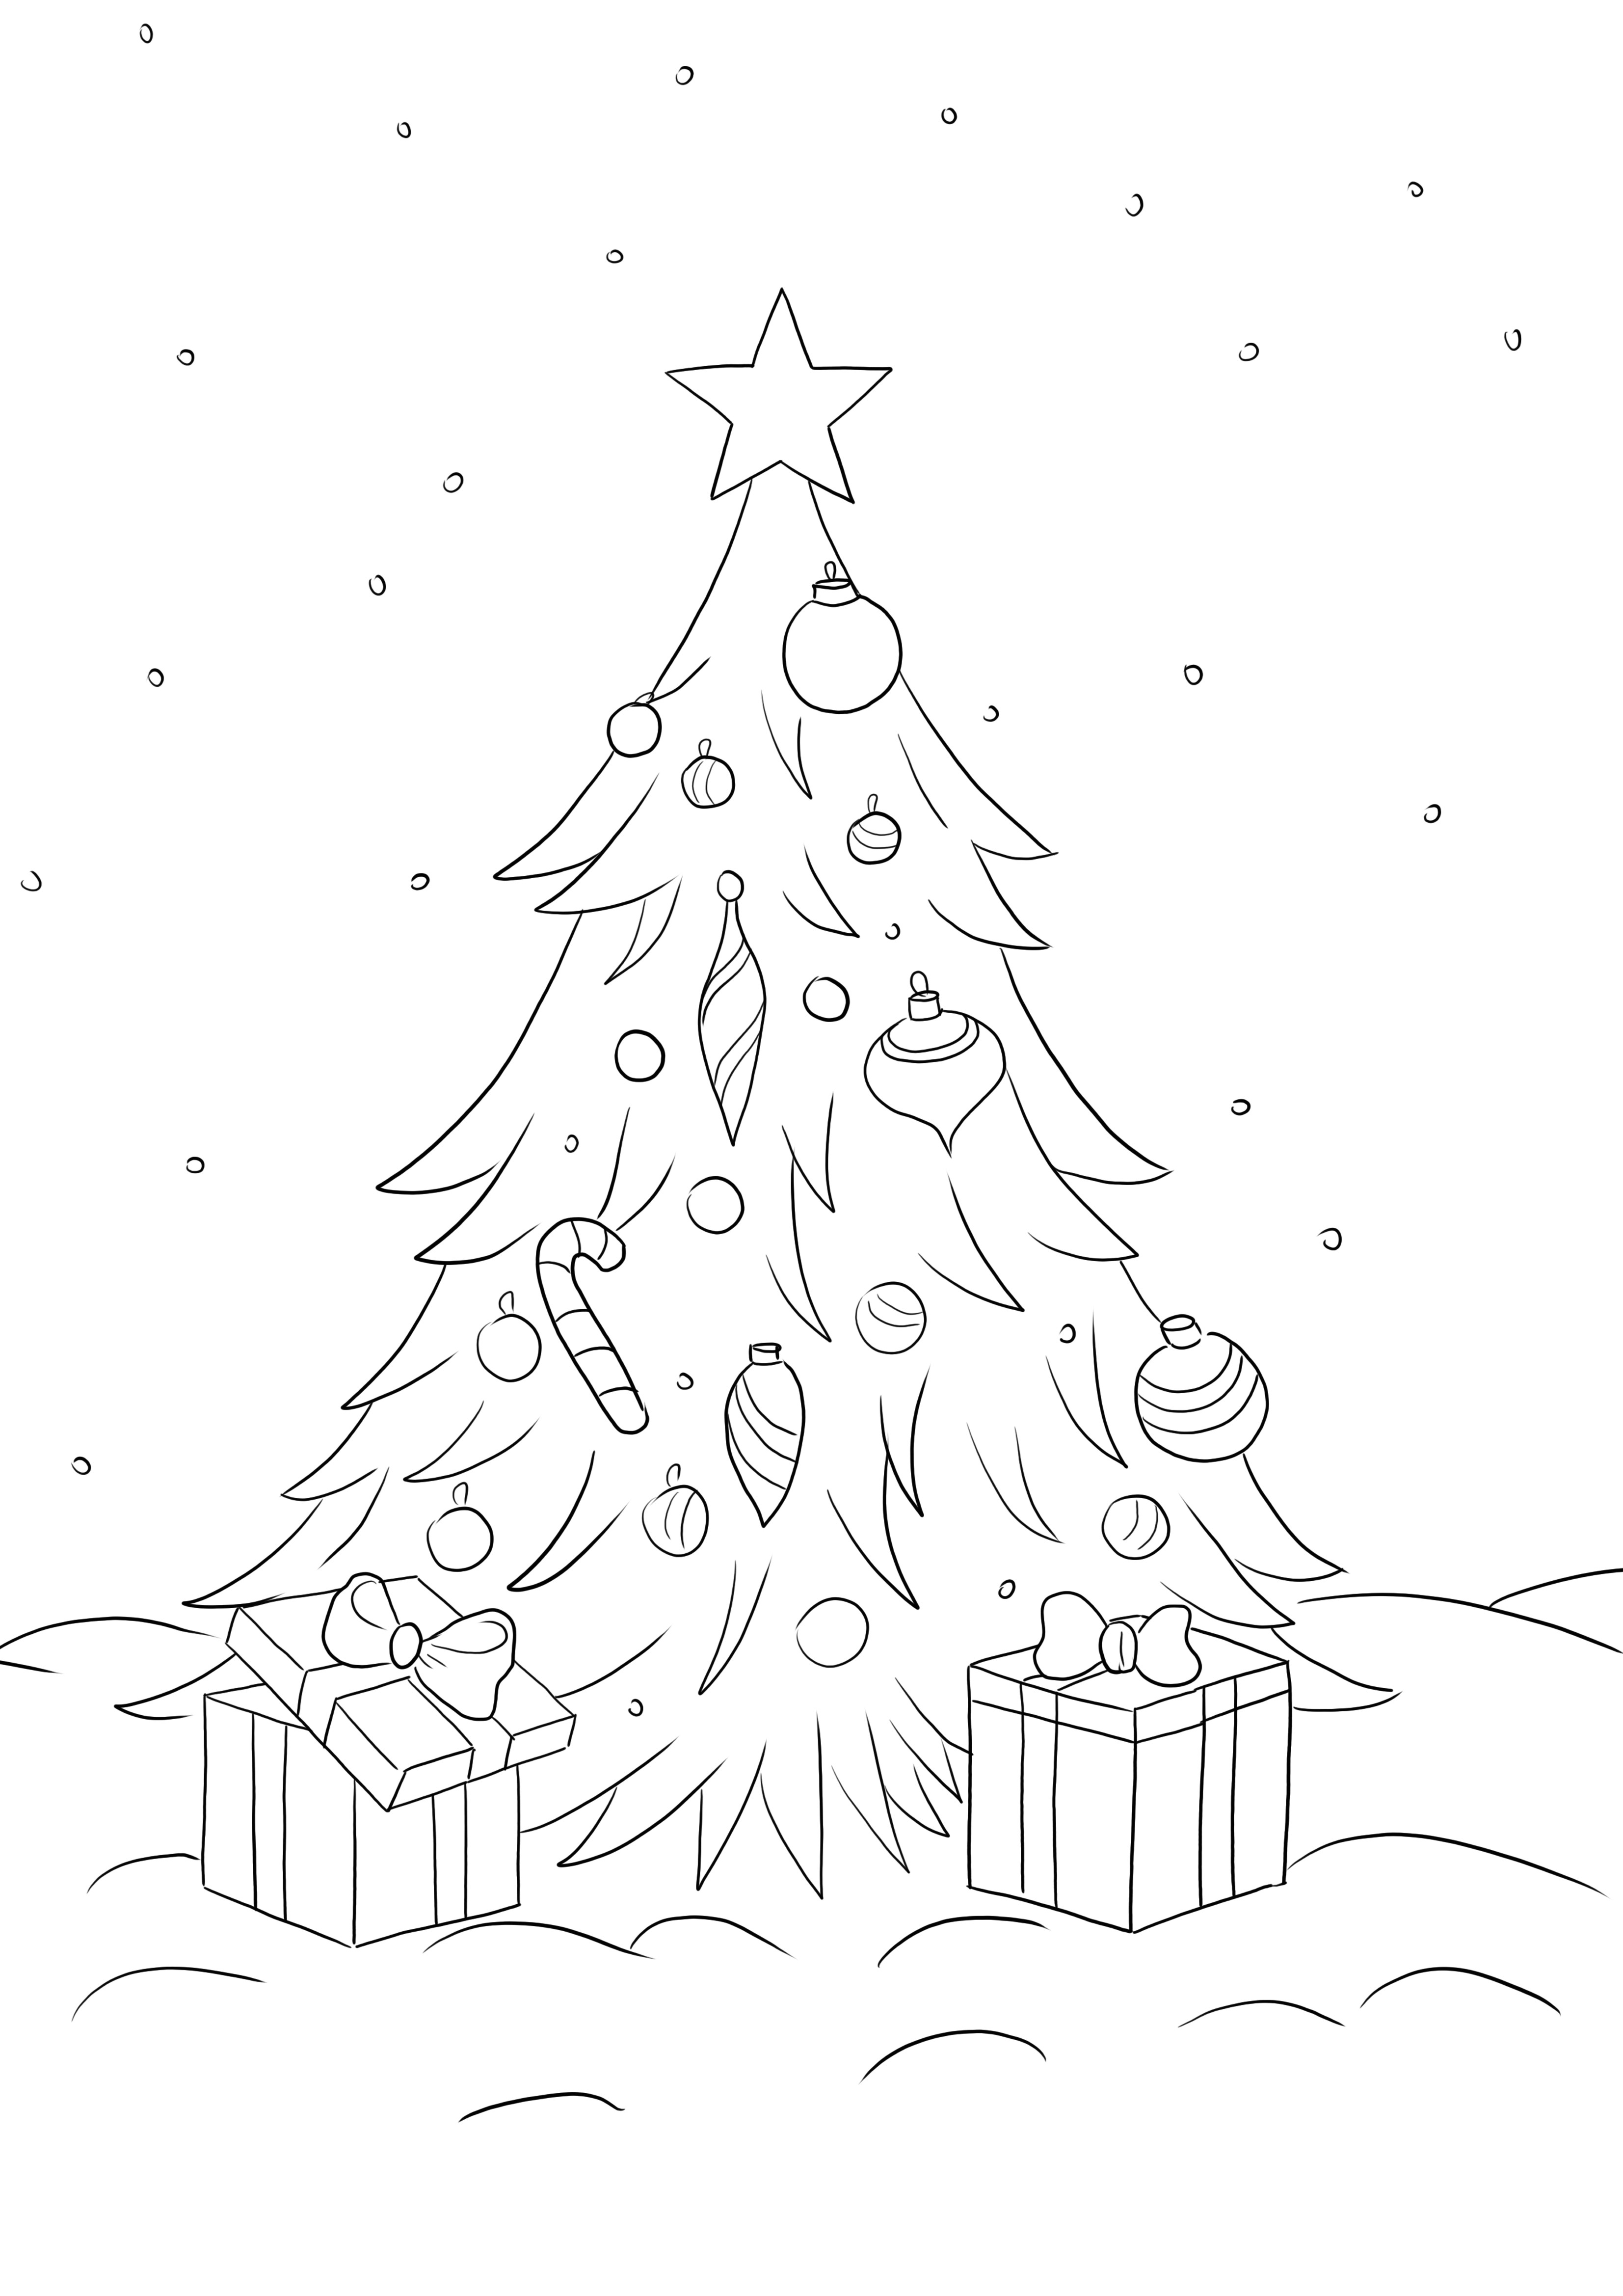 Christmas Tree with Presents se puede descargar y colorear gratis